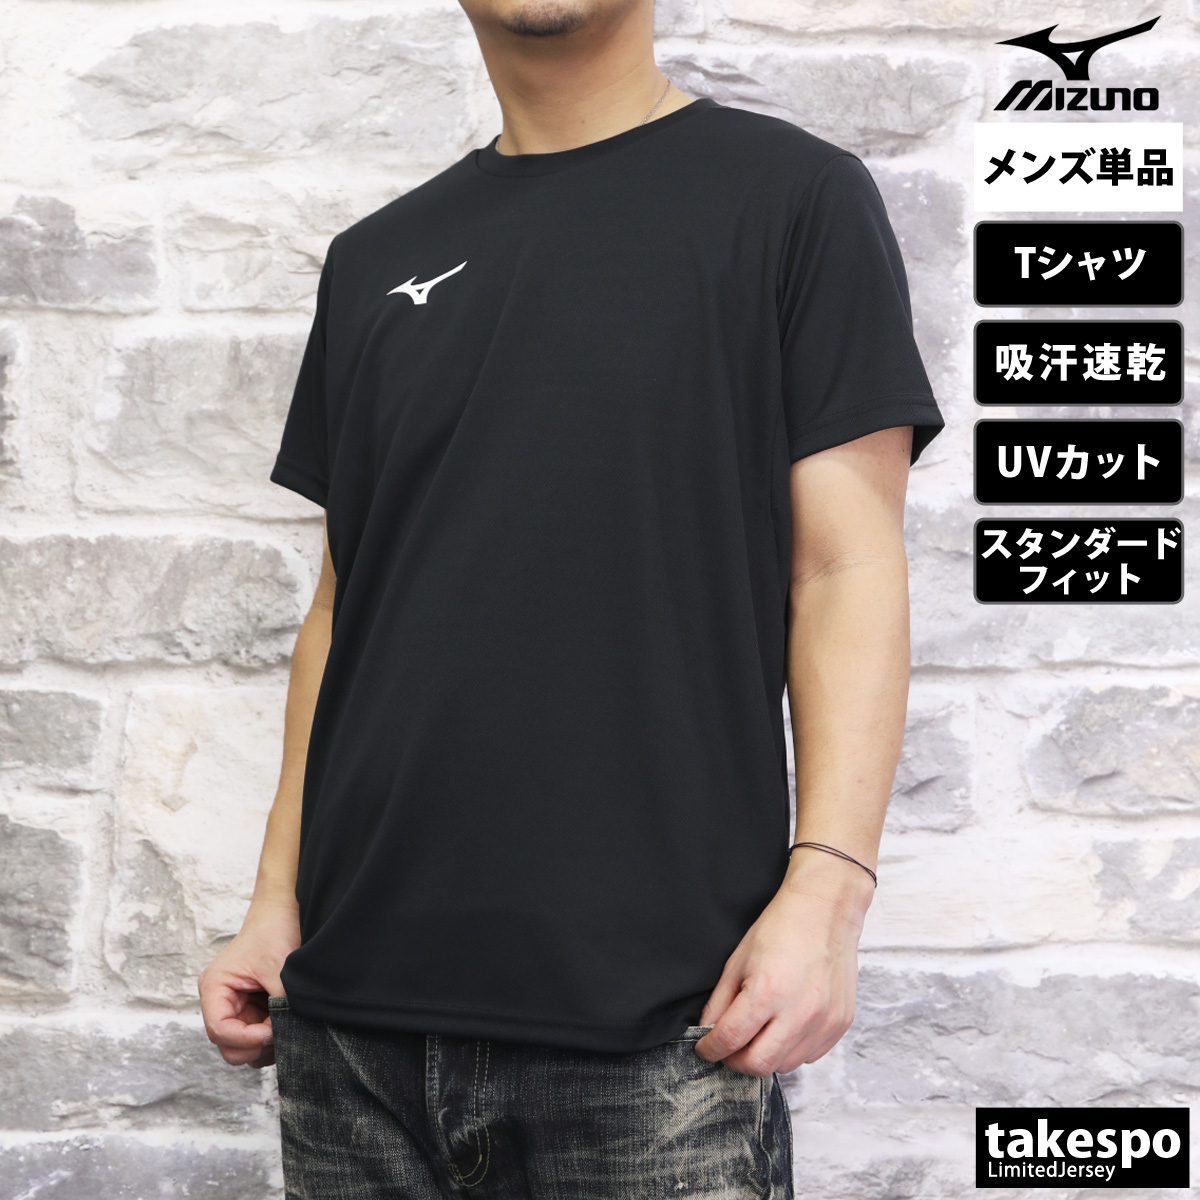 ミズノ Tシャツ メンズ 上 Mizuno 半袖 吸汗 速乾 UVカット 32MAA156 :32MAA156:限定ジャージのタケスポ 通販  